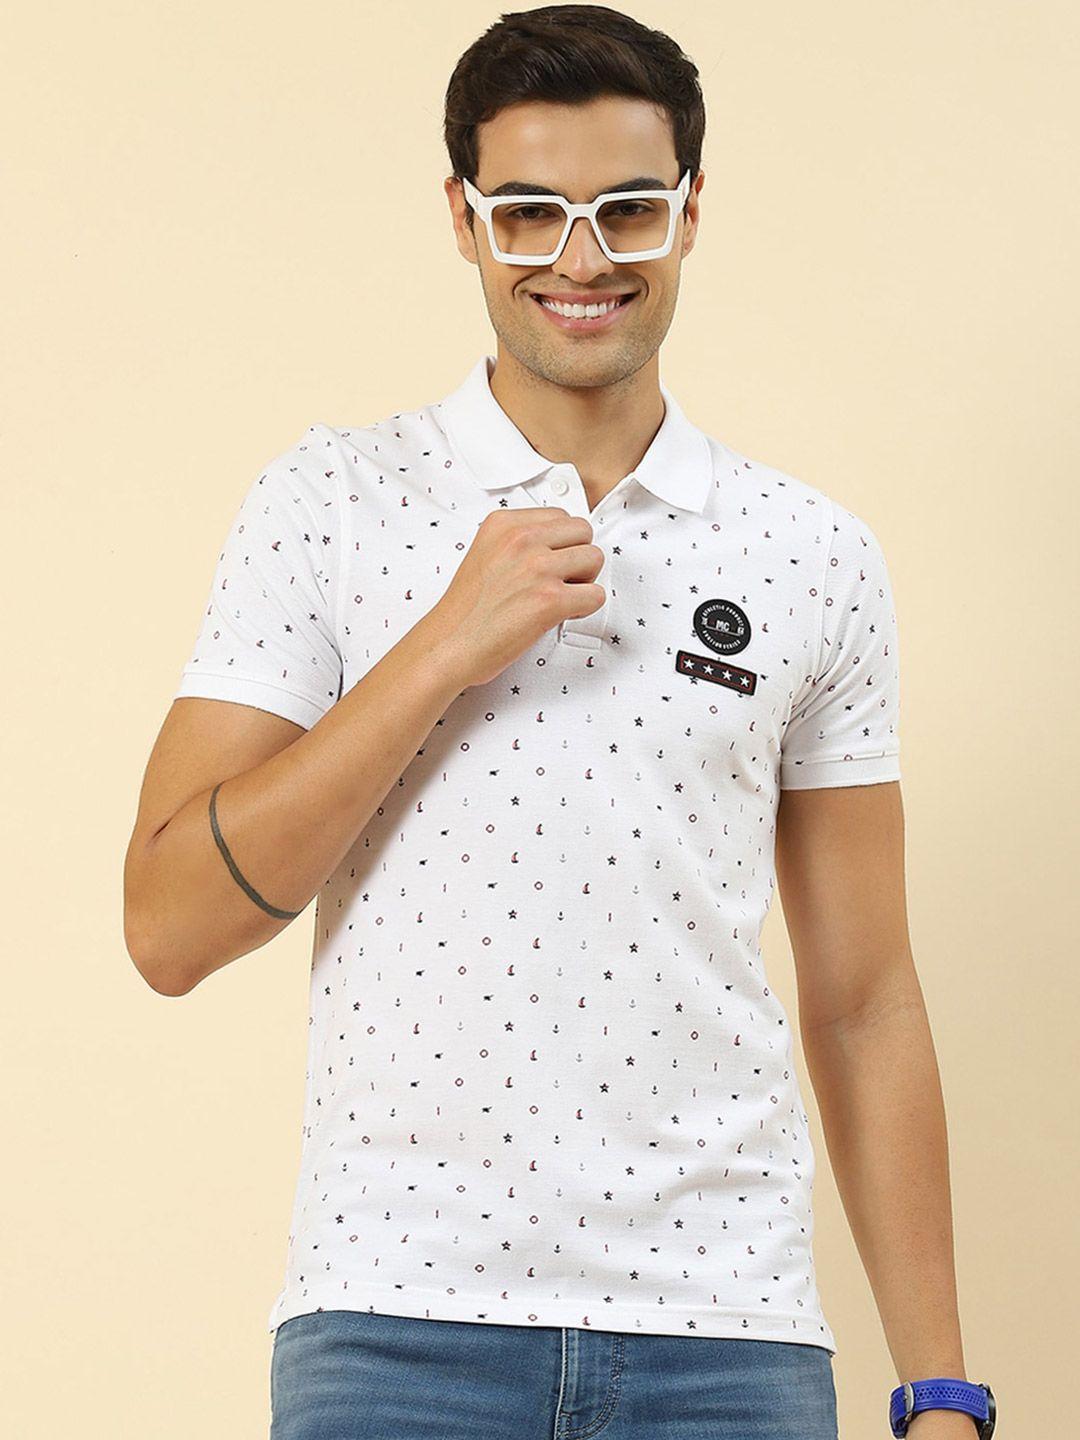 monte-carlo-conversational--printed-applique-polo-collar-t-shirt